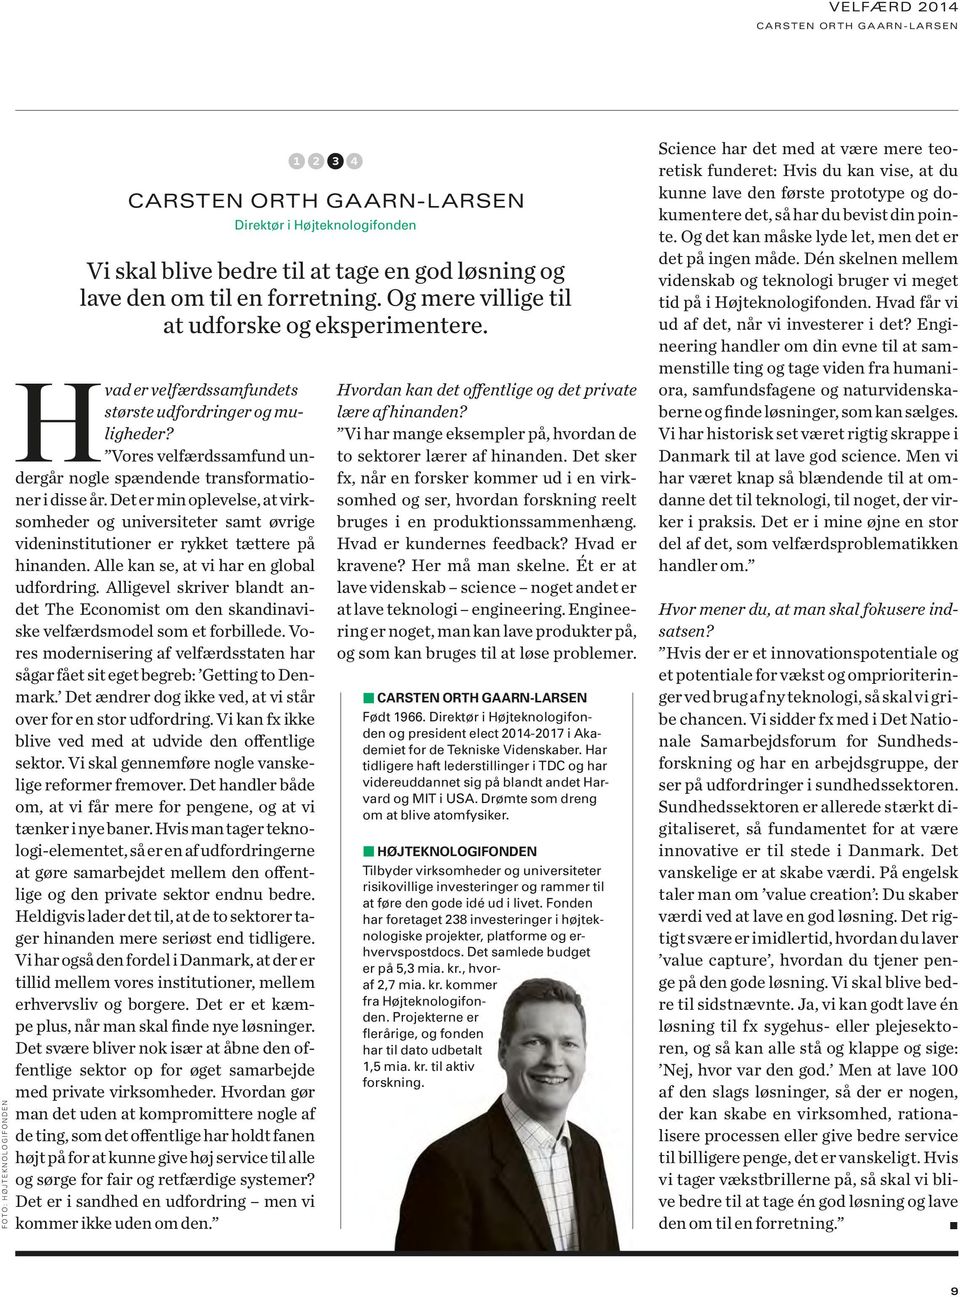 Alle kan se, at vi har en global udfordring. Alligevel skriver blandt andet The Economist om den skandinaviske velfærdsmodel som et forbillede.